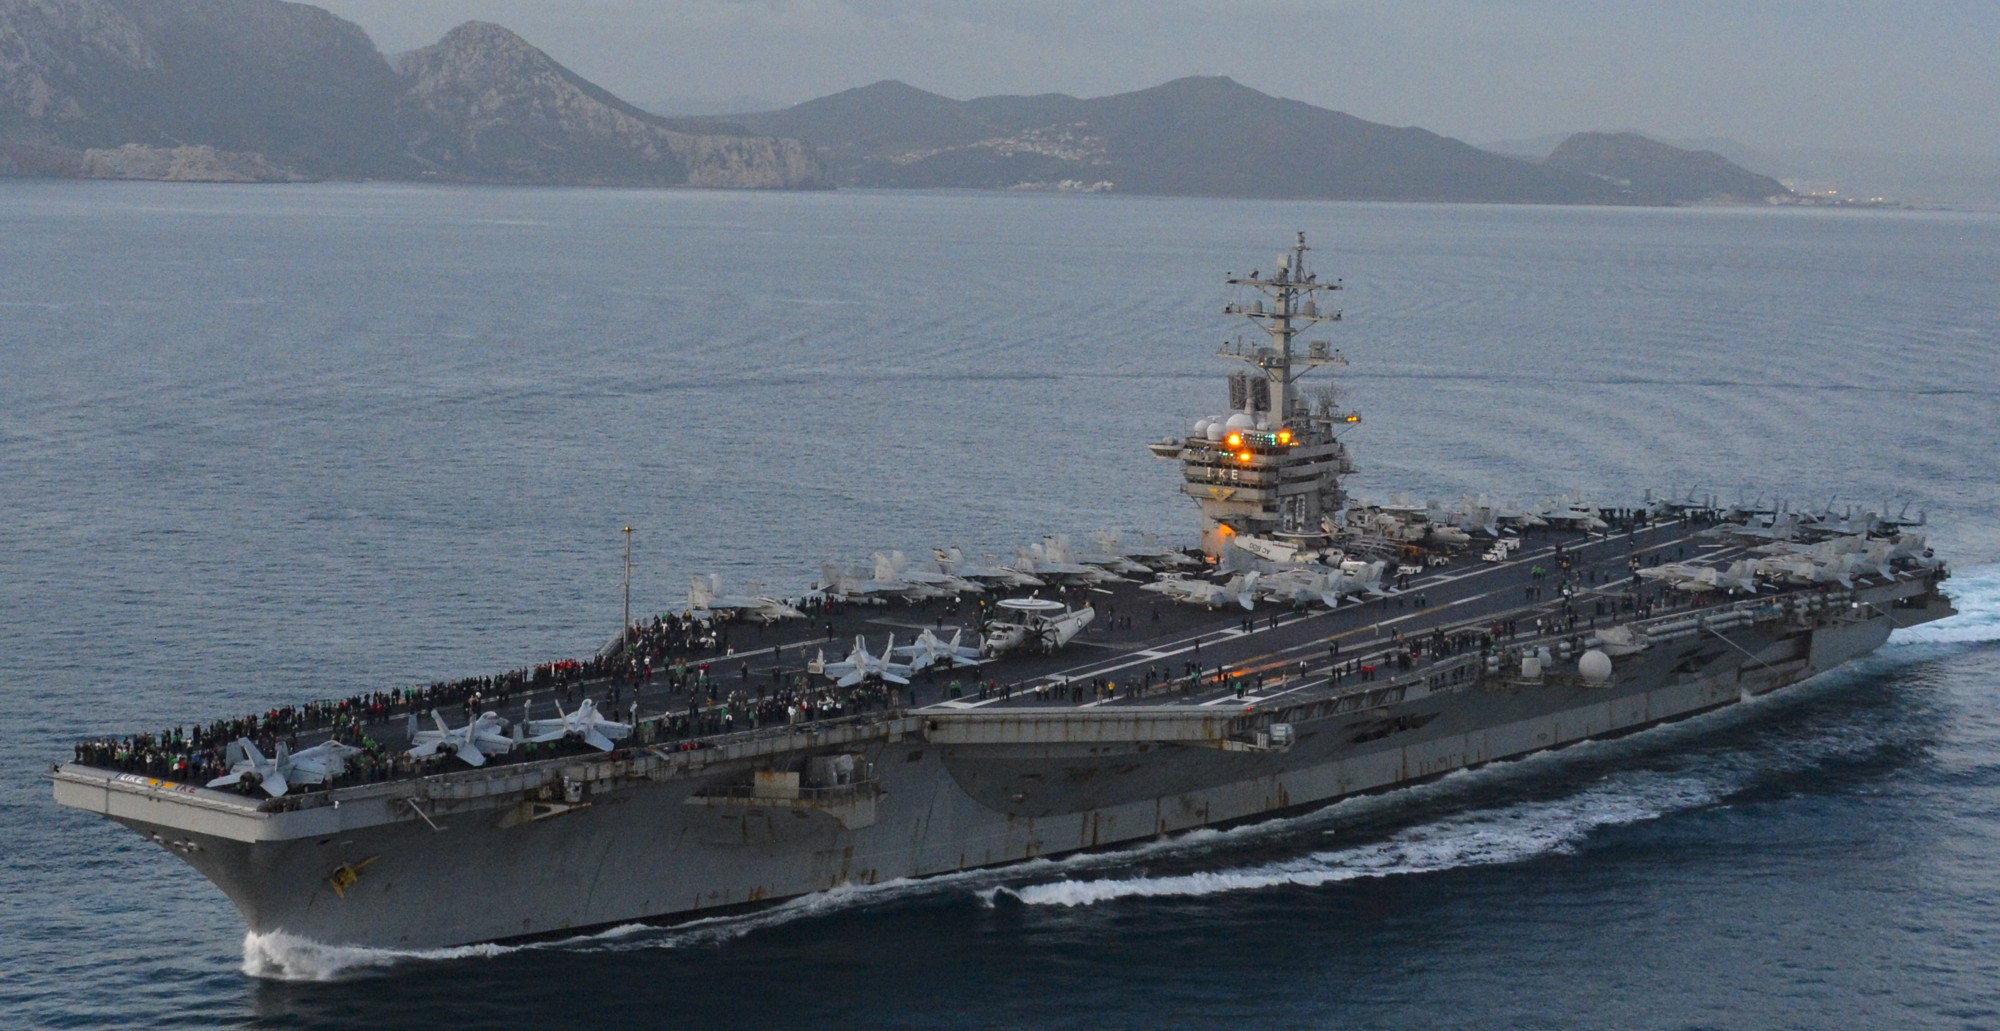 cvn-69 uss dwight d. eisenhower aircraft carrier air wing cvw-3 us navy strait gibraltar mediterranean sea 495